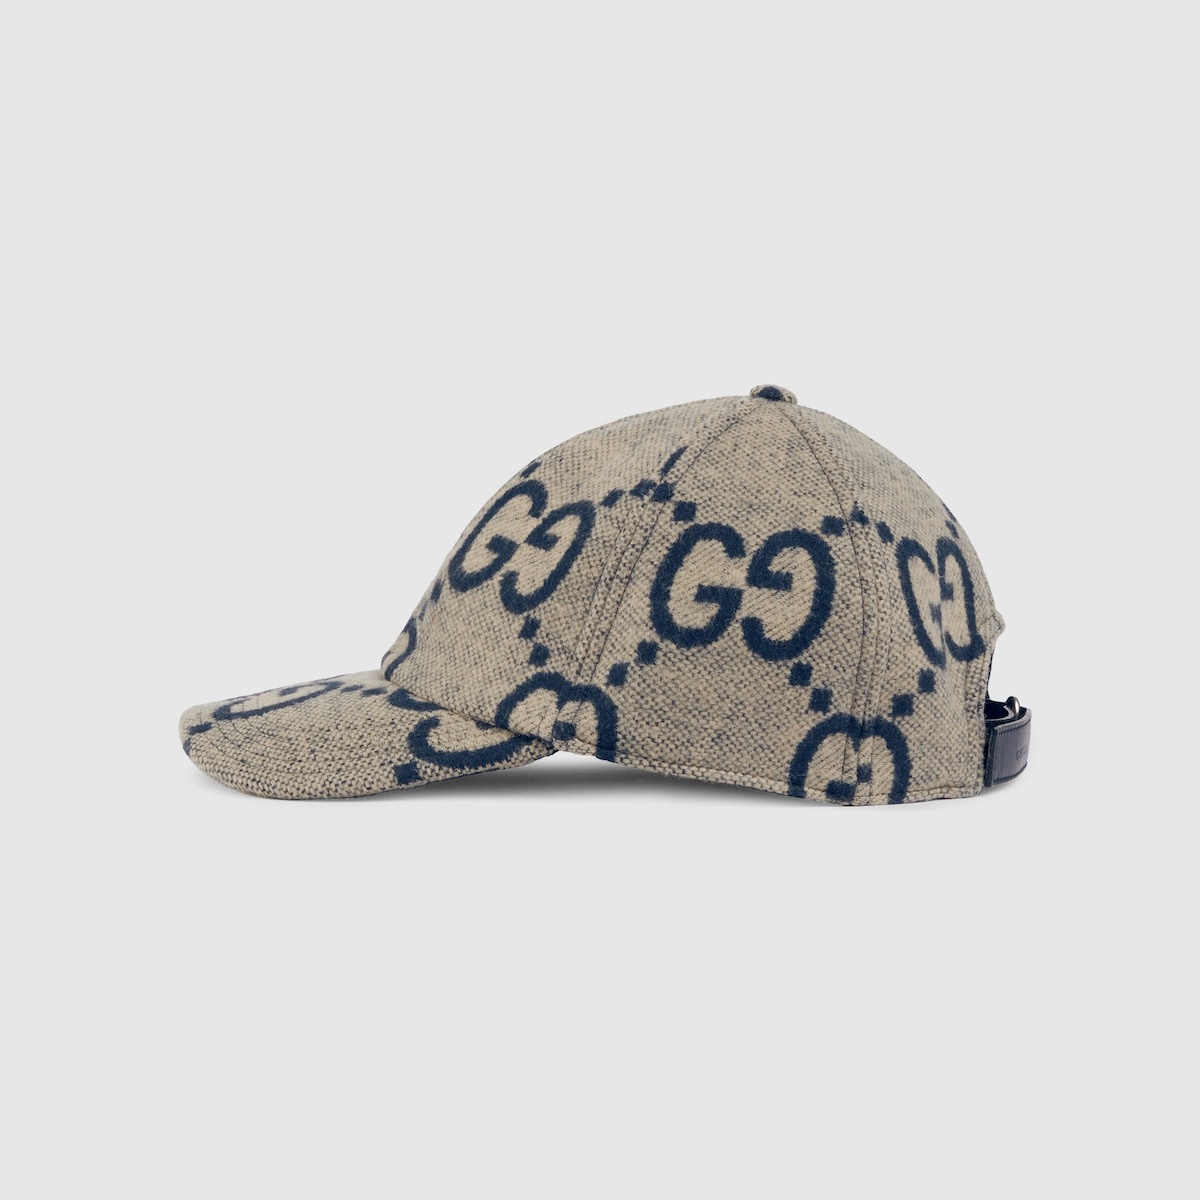 Jumbo GG wool baseball hat - 2